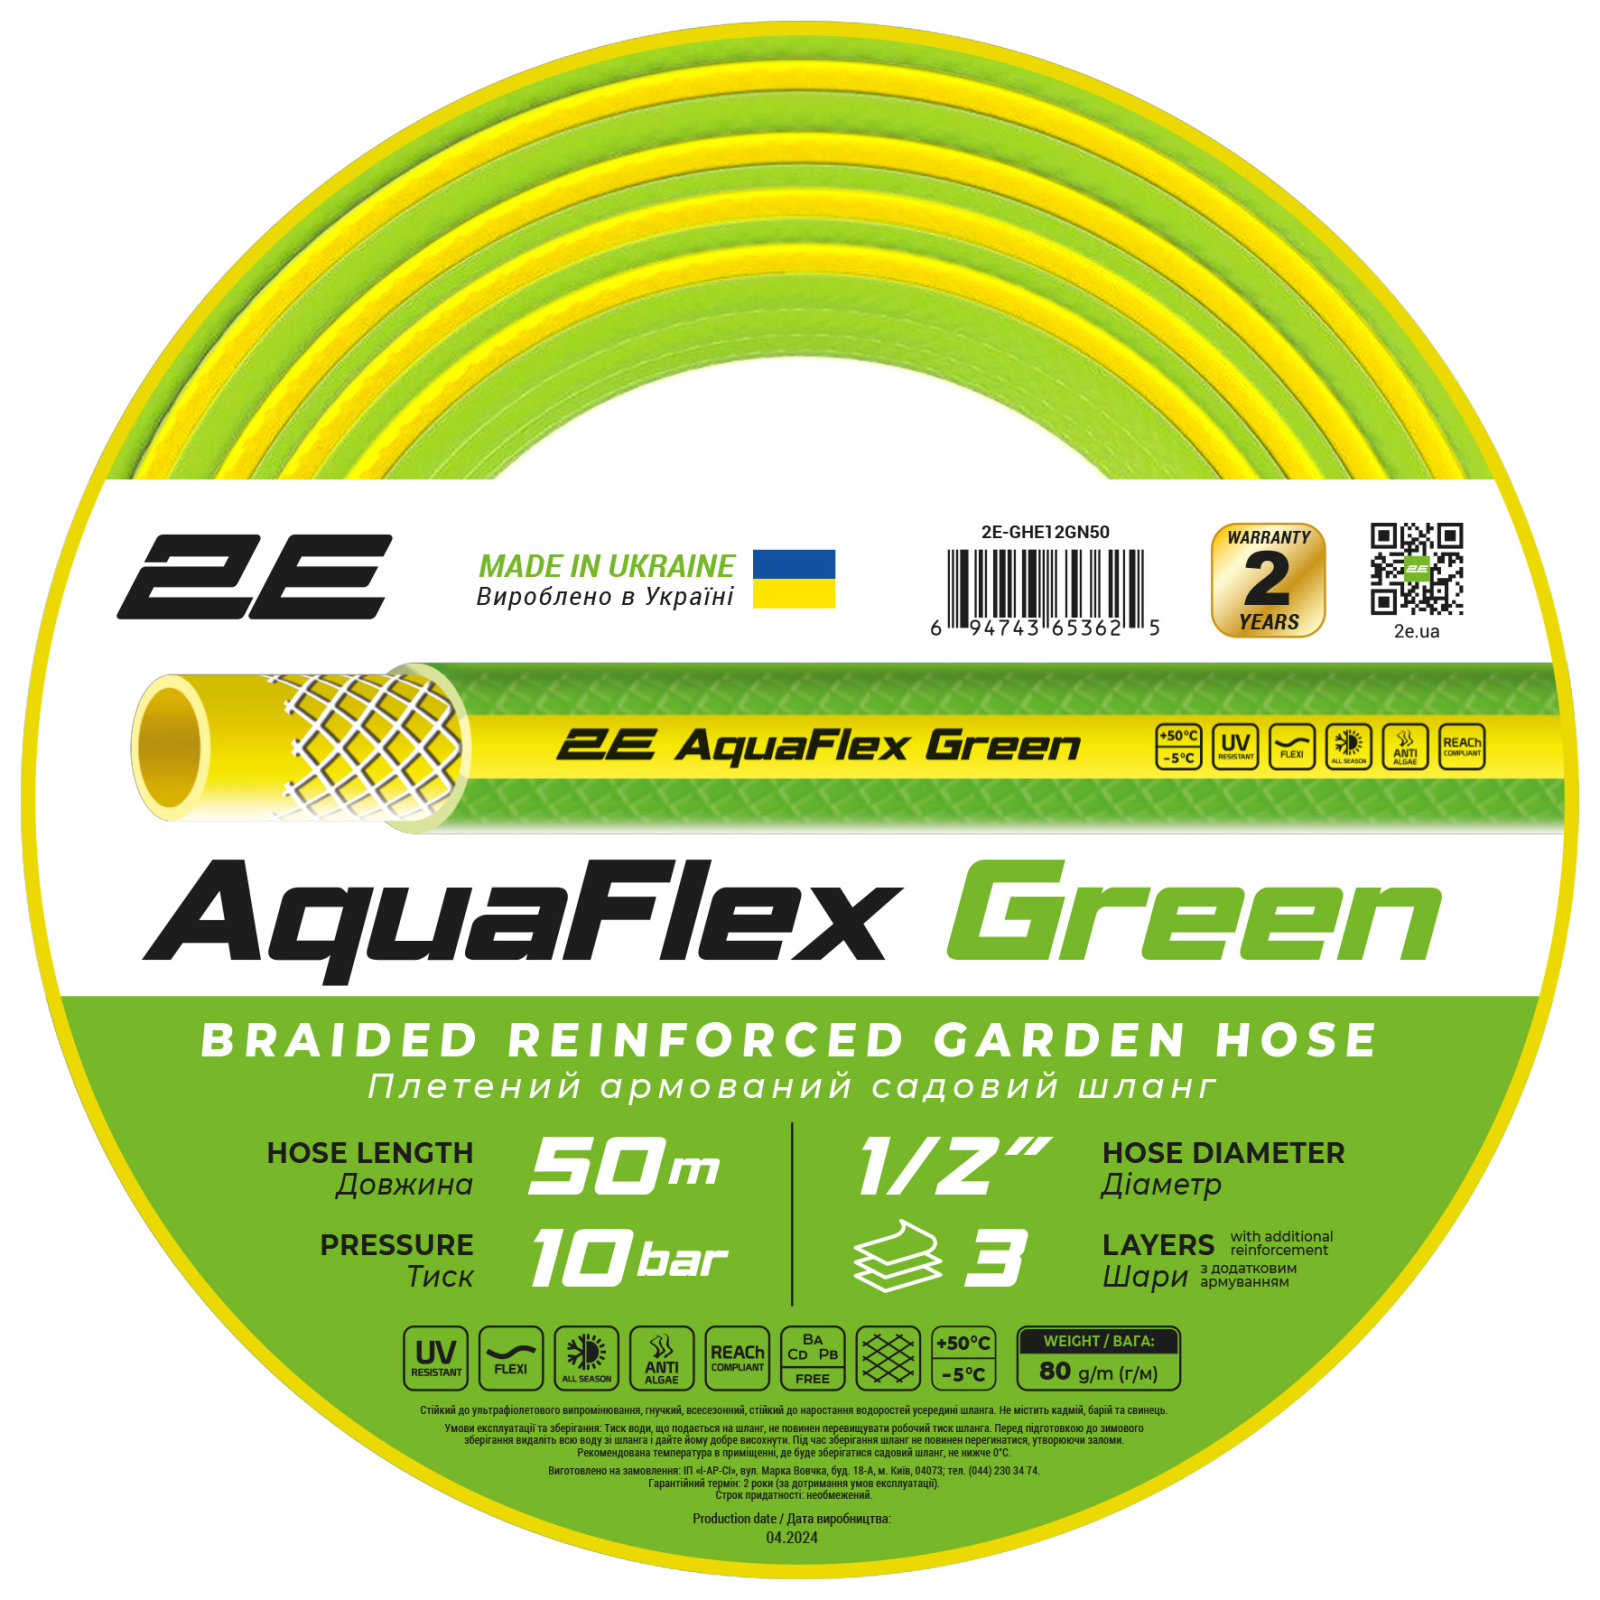 Поливочный шланг 2E AquaFlex Green 1/2", 50м, 3 шари, 10бар, -5+50°C (2E-GHE12GN50)